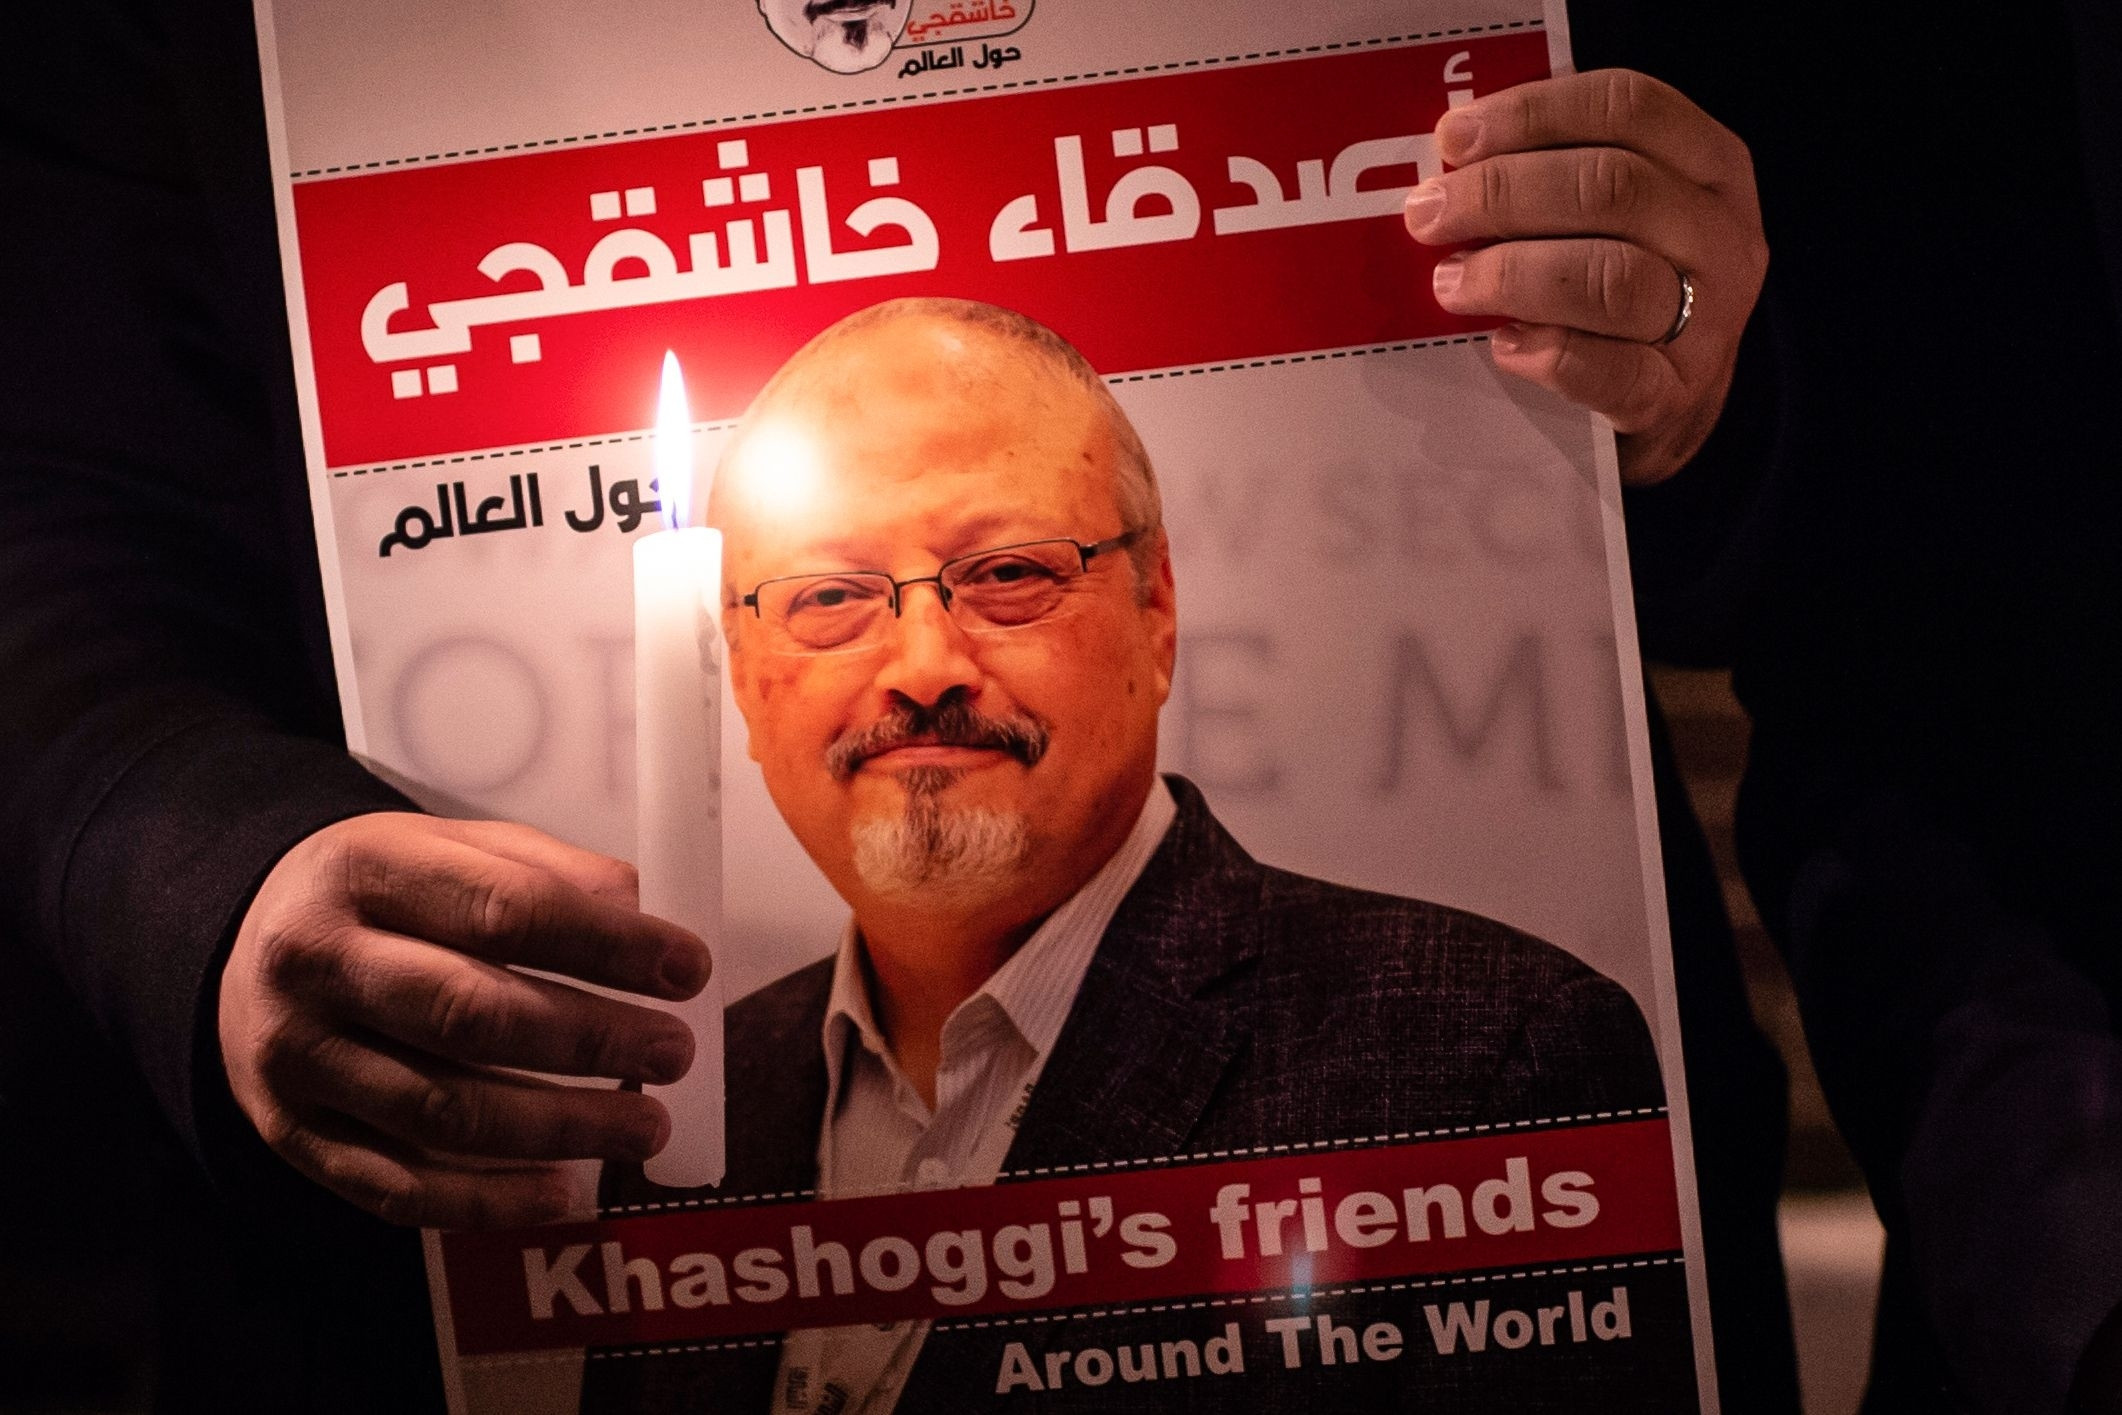 खसोग्गी हत्या प्रकरणको अन्तर्राष्ट्रिय छानविन असम्भव : साउदी अरब